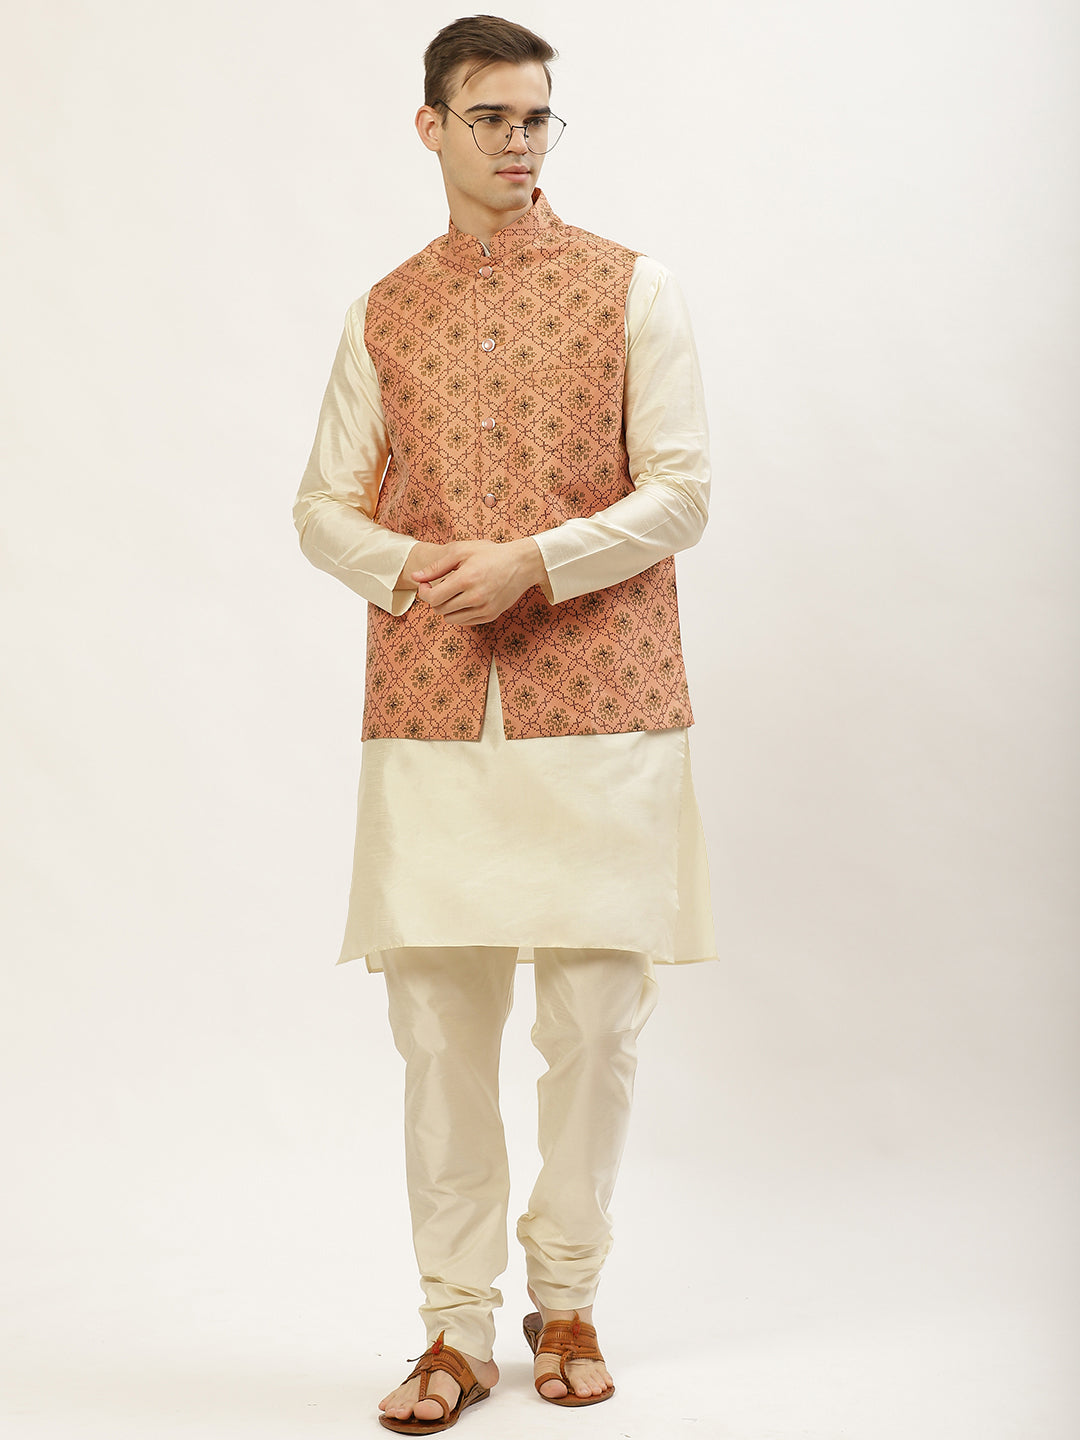 Jompers Men's Orange Printed Nehru Jacket